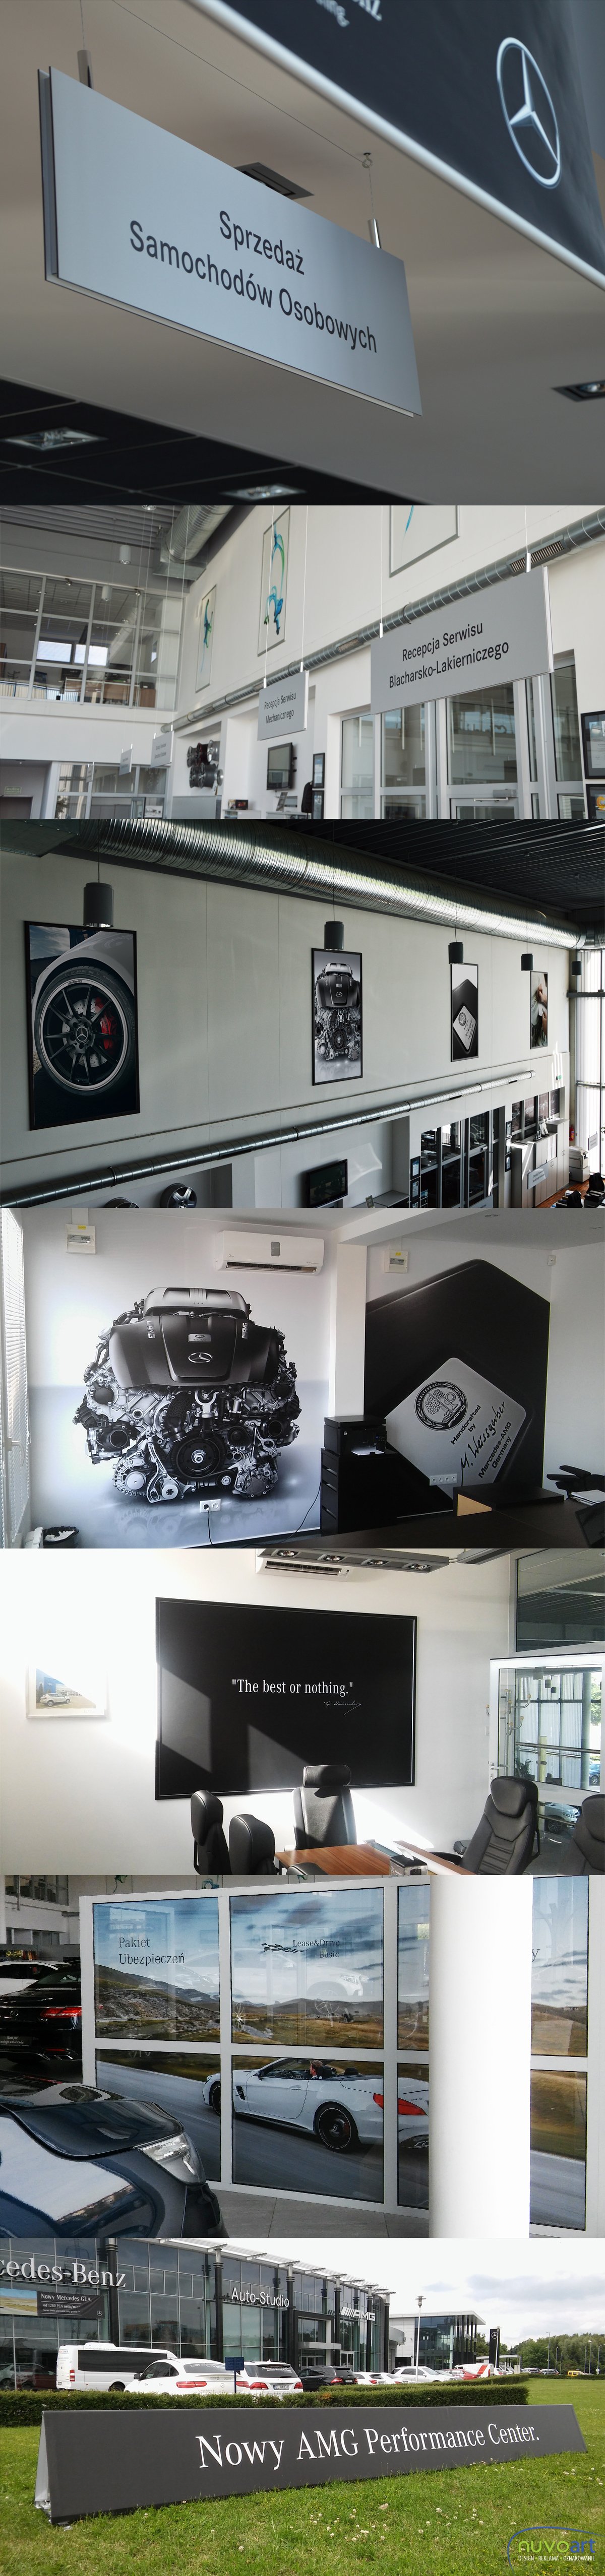 Oznakowanie salonu Mercedes Benz, które polegało na zaprojektowaniu, wykonaniu i montażu oznakowania wewnętrznego, w postaci szyldów, oklejeniu szyb folią perforowaną i mrożoną, montażu fototapet i innych grafik na ścianach, a także banerów zewnętrznych, mocowanych do spawanych konstrukcji. 